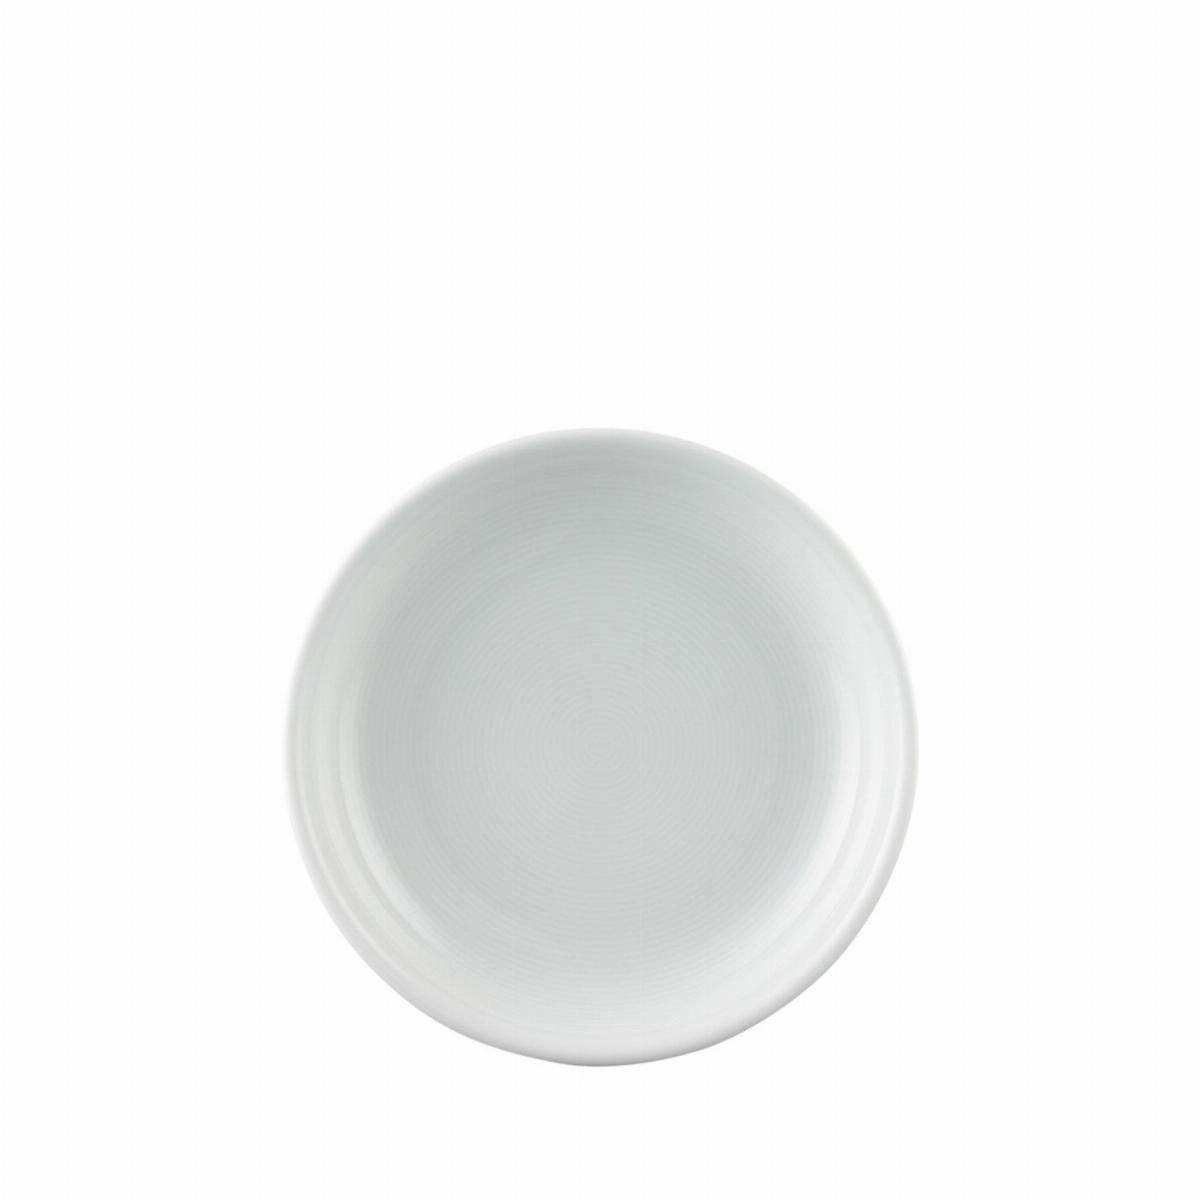 6 cm tief - 19 Stück - TREND Salatteller Thomas Teller Weiß Porzellan